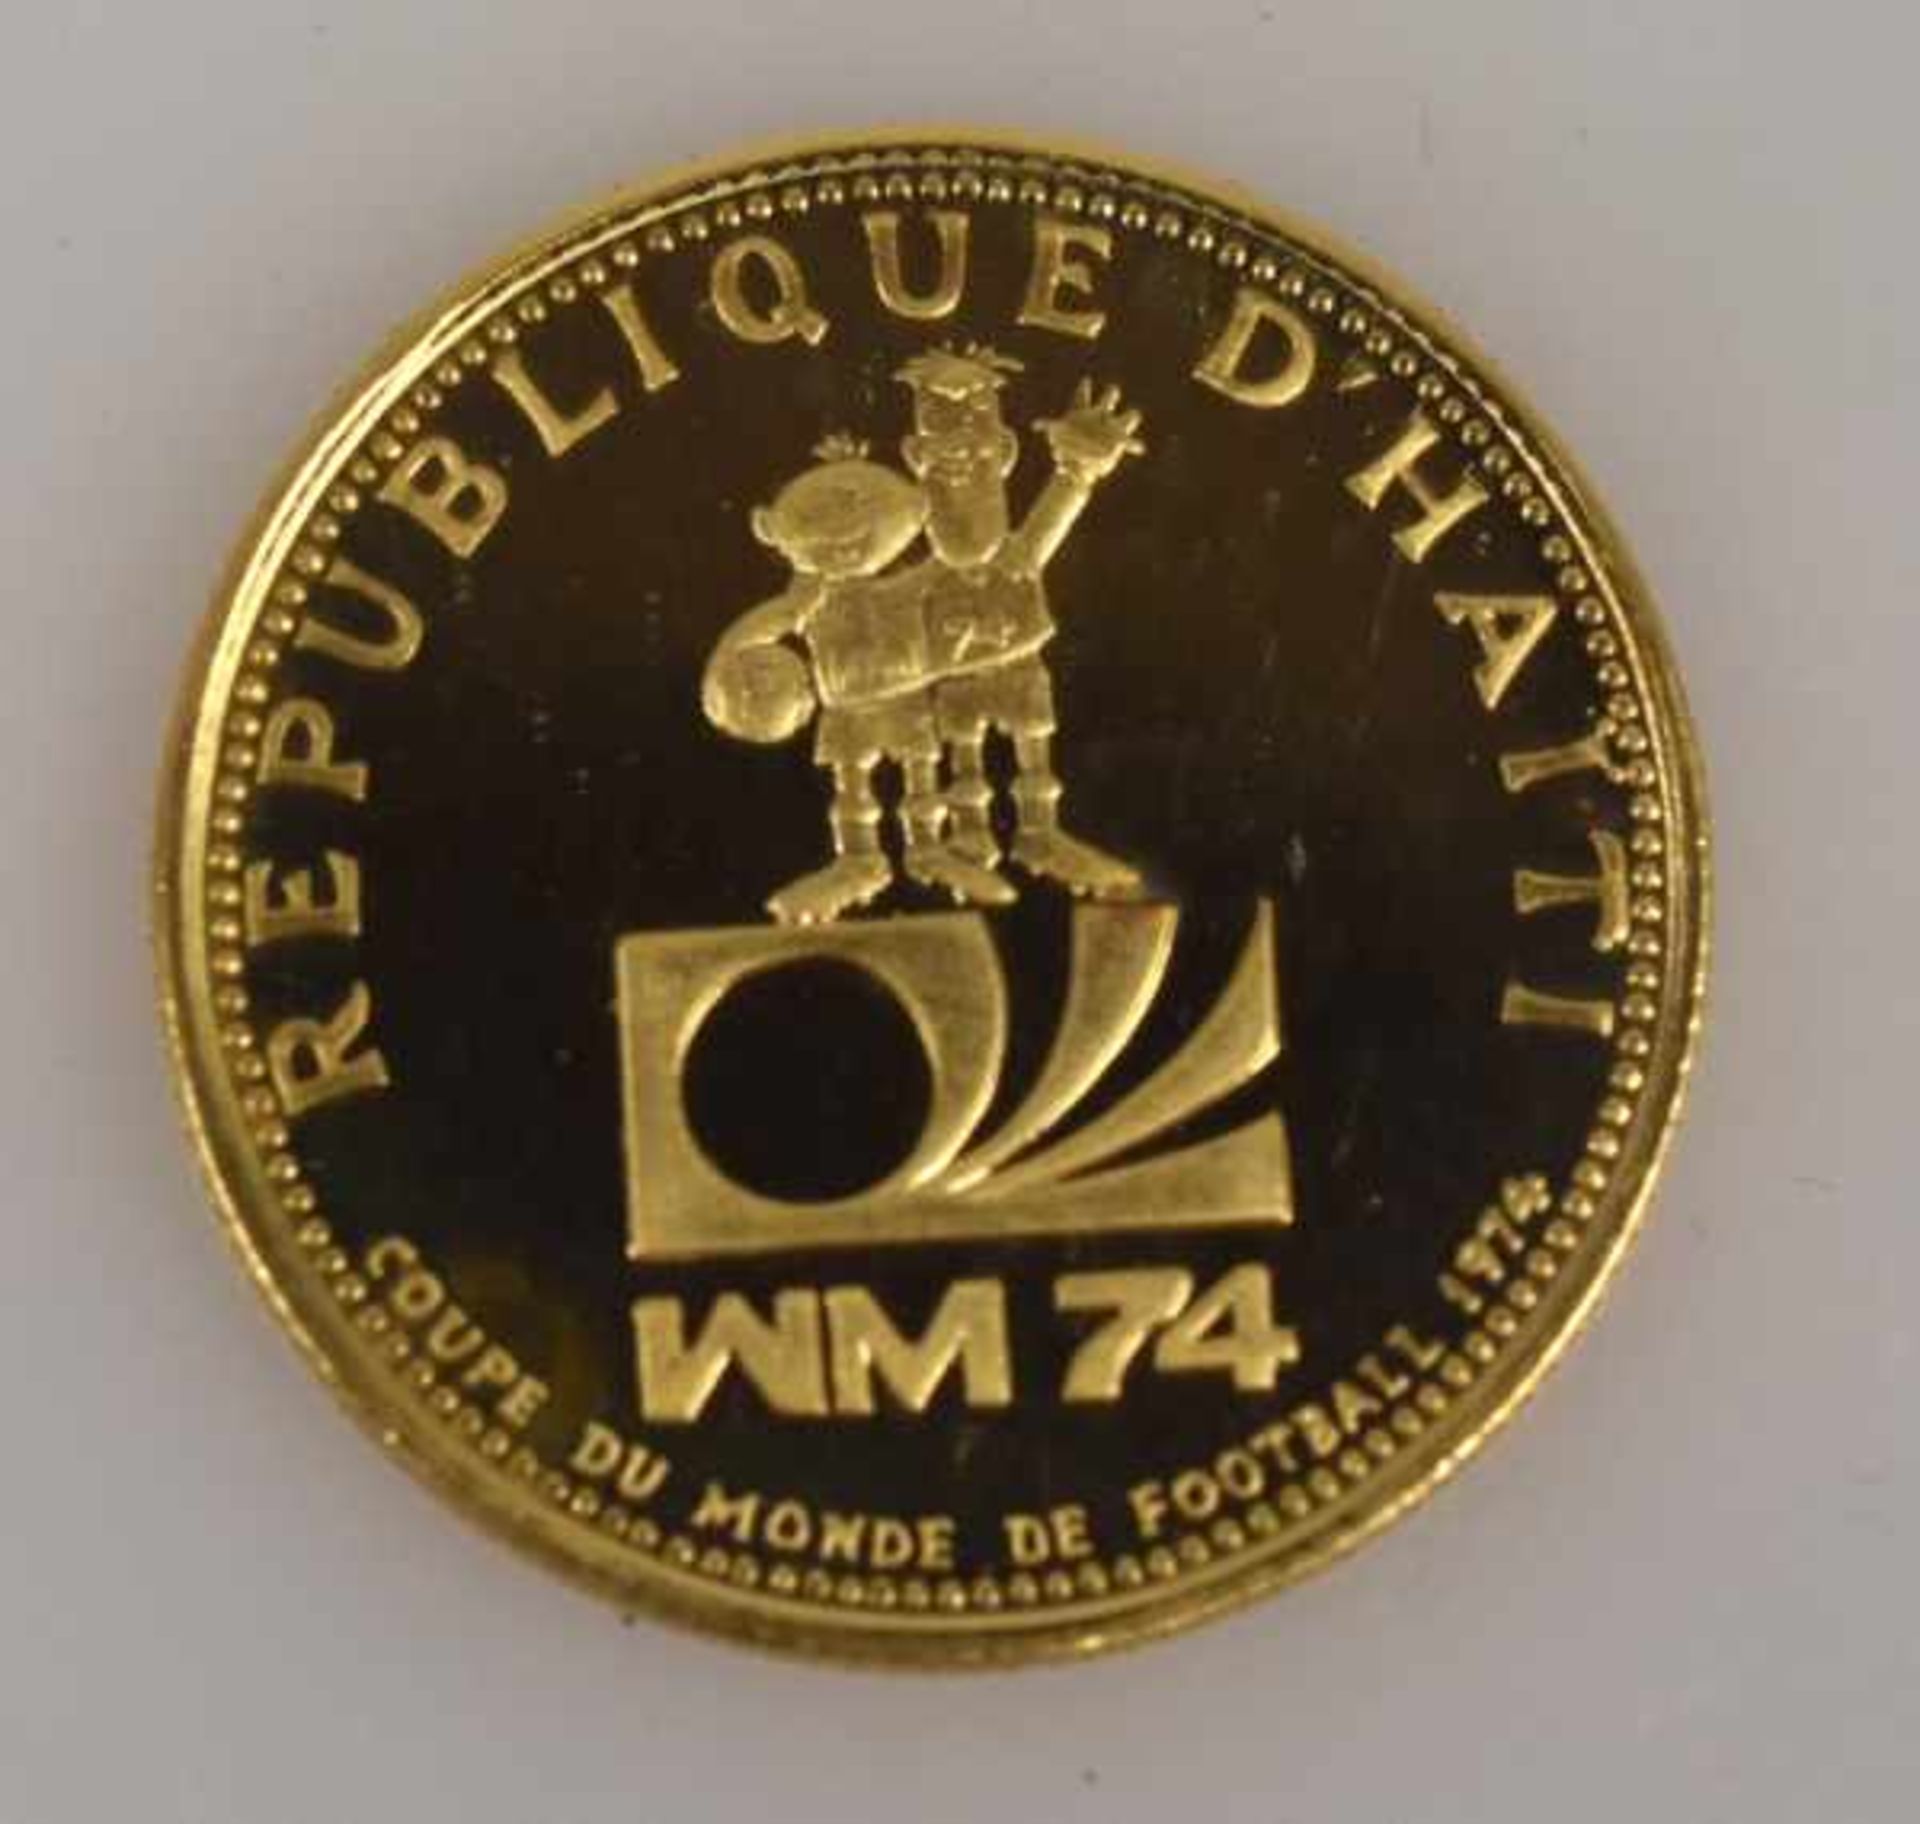 MÜNZEN-LOT 1 Münzanhänger mit Münze 10Fr. Schweiz Nachprägung in Fassung 14ct, 8,3g -1 Goldmünze 200 - Bild 5 aus 17